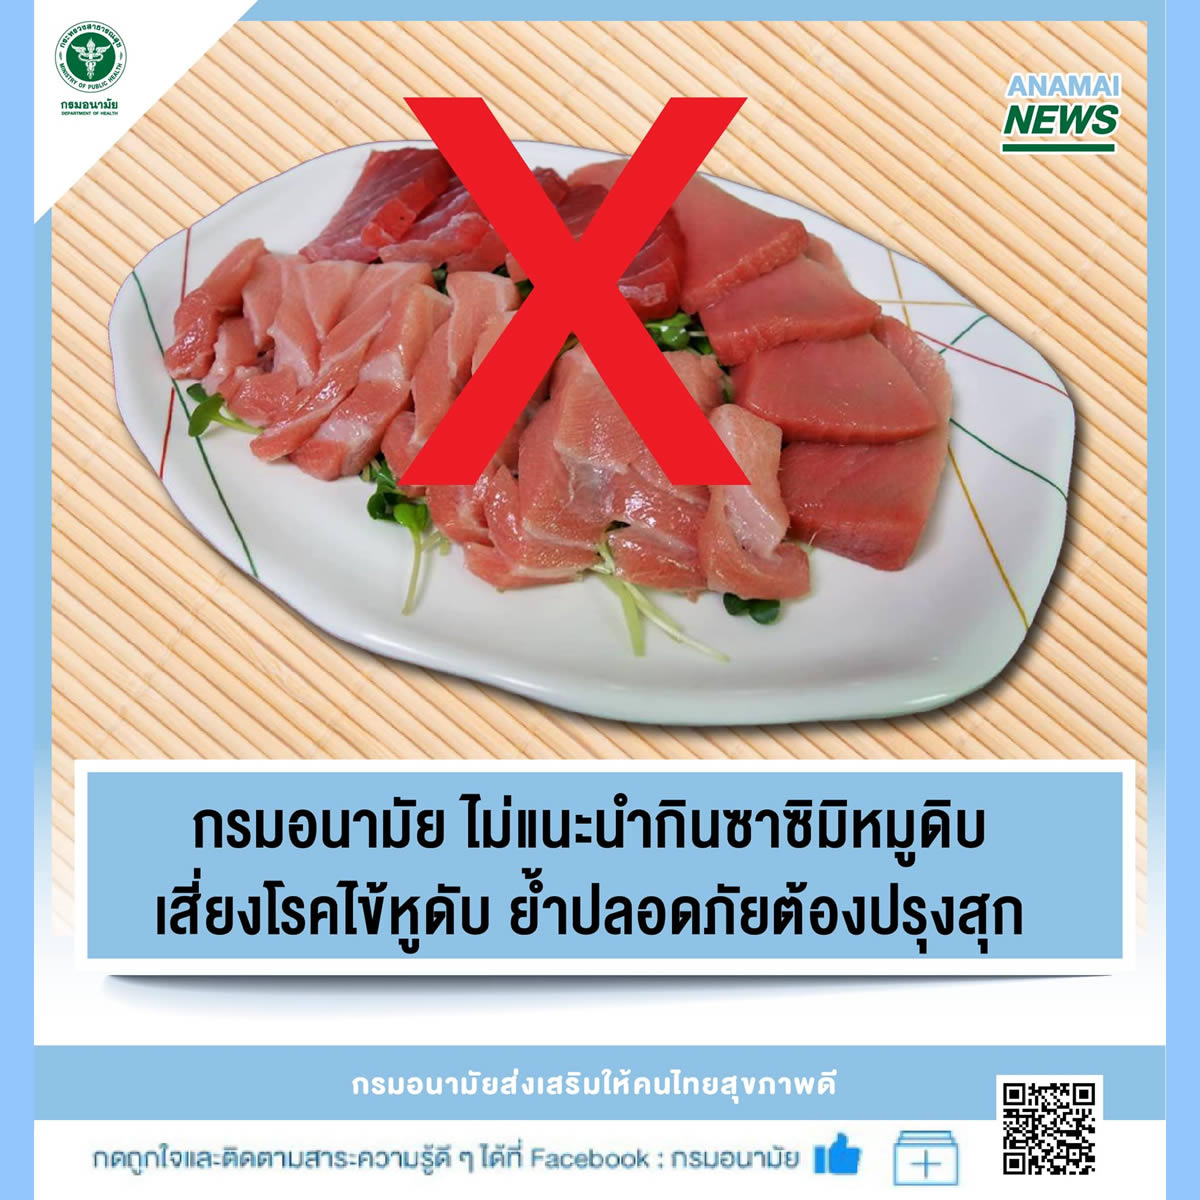 タイ保健省「豚肉の刺身を食べないで！」生の豚肉提供の日本料理店発覚で改めて呼びかけ